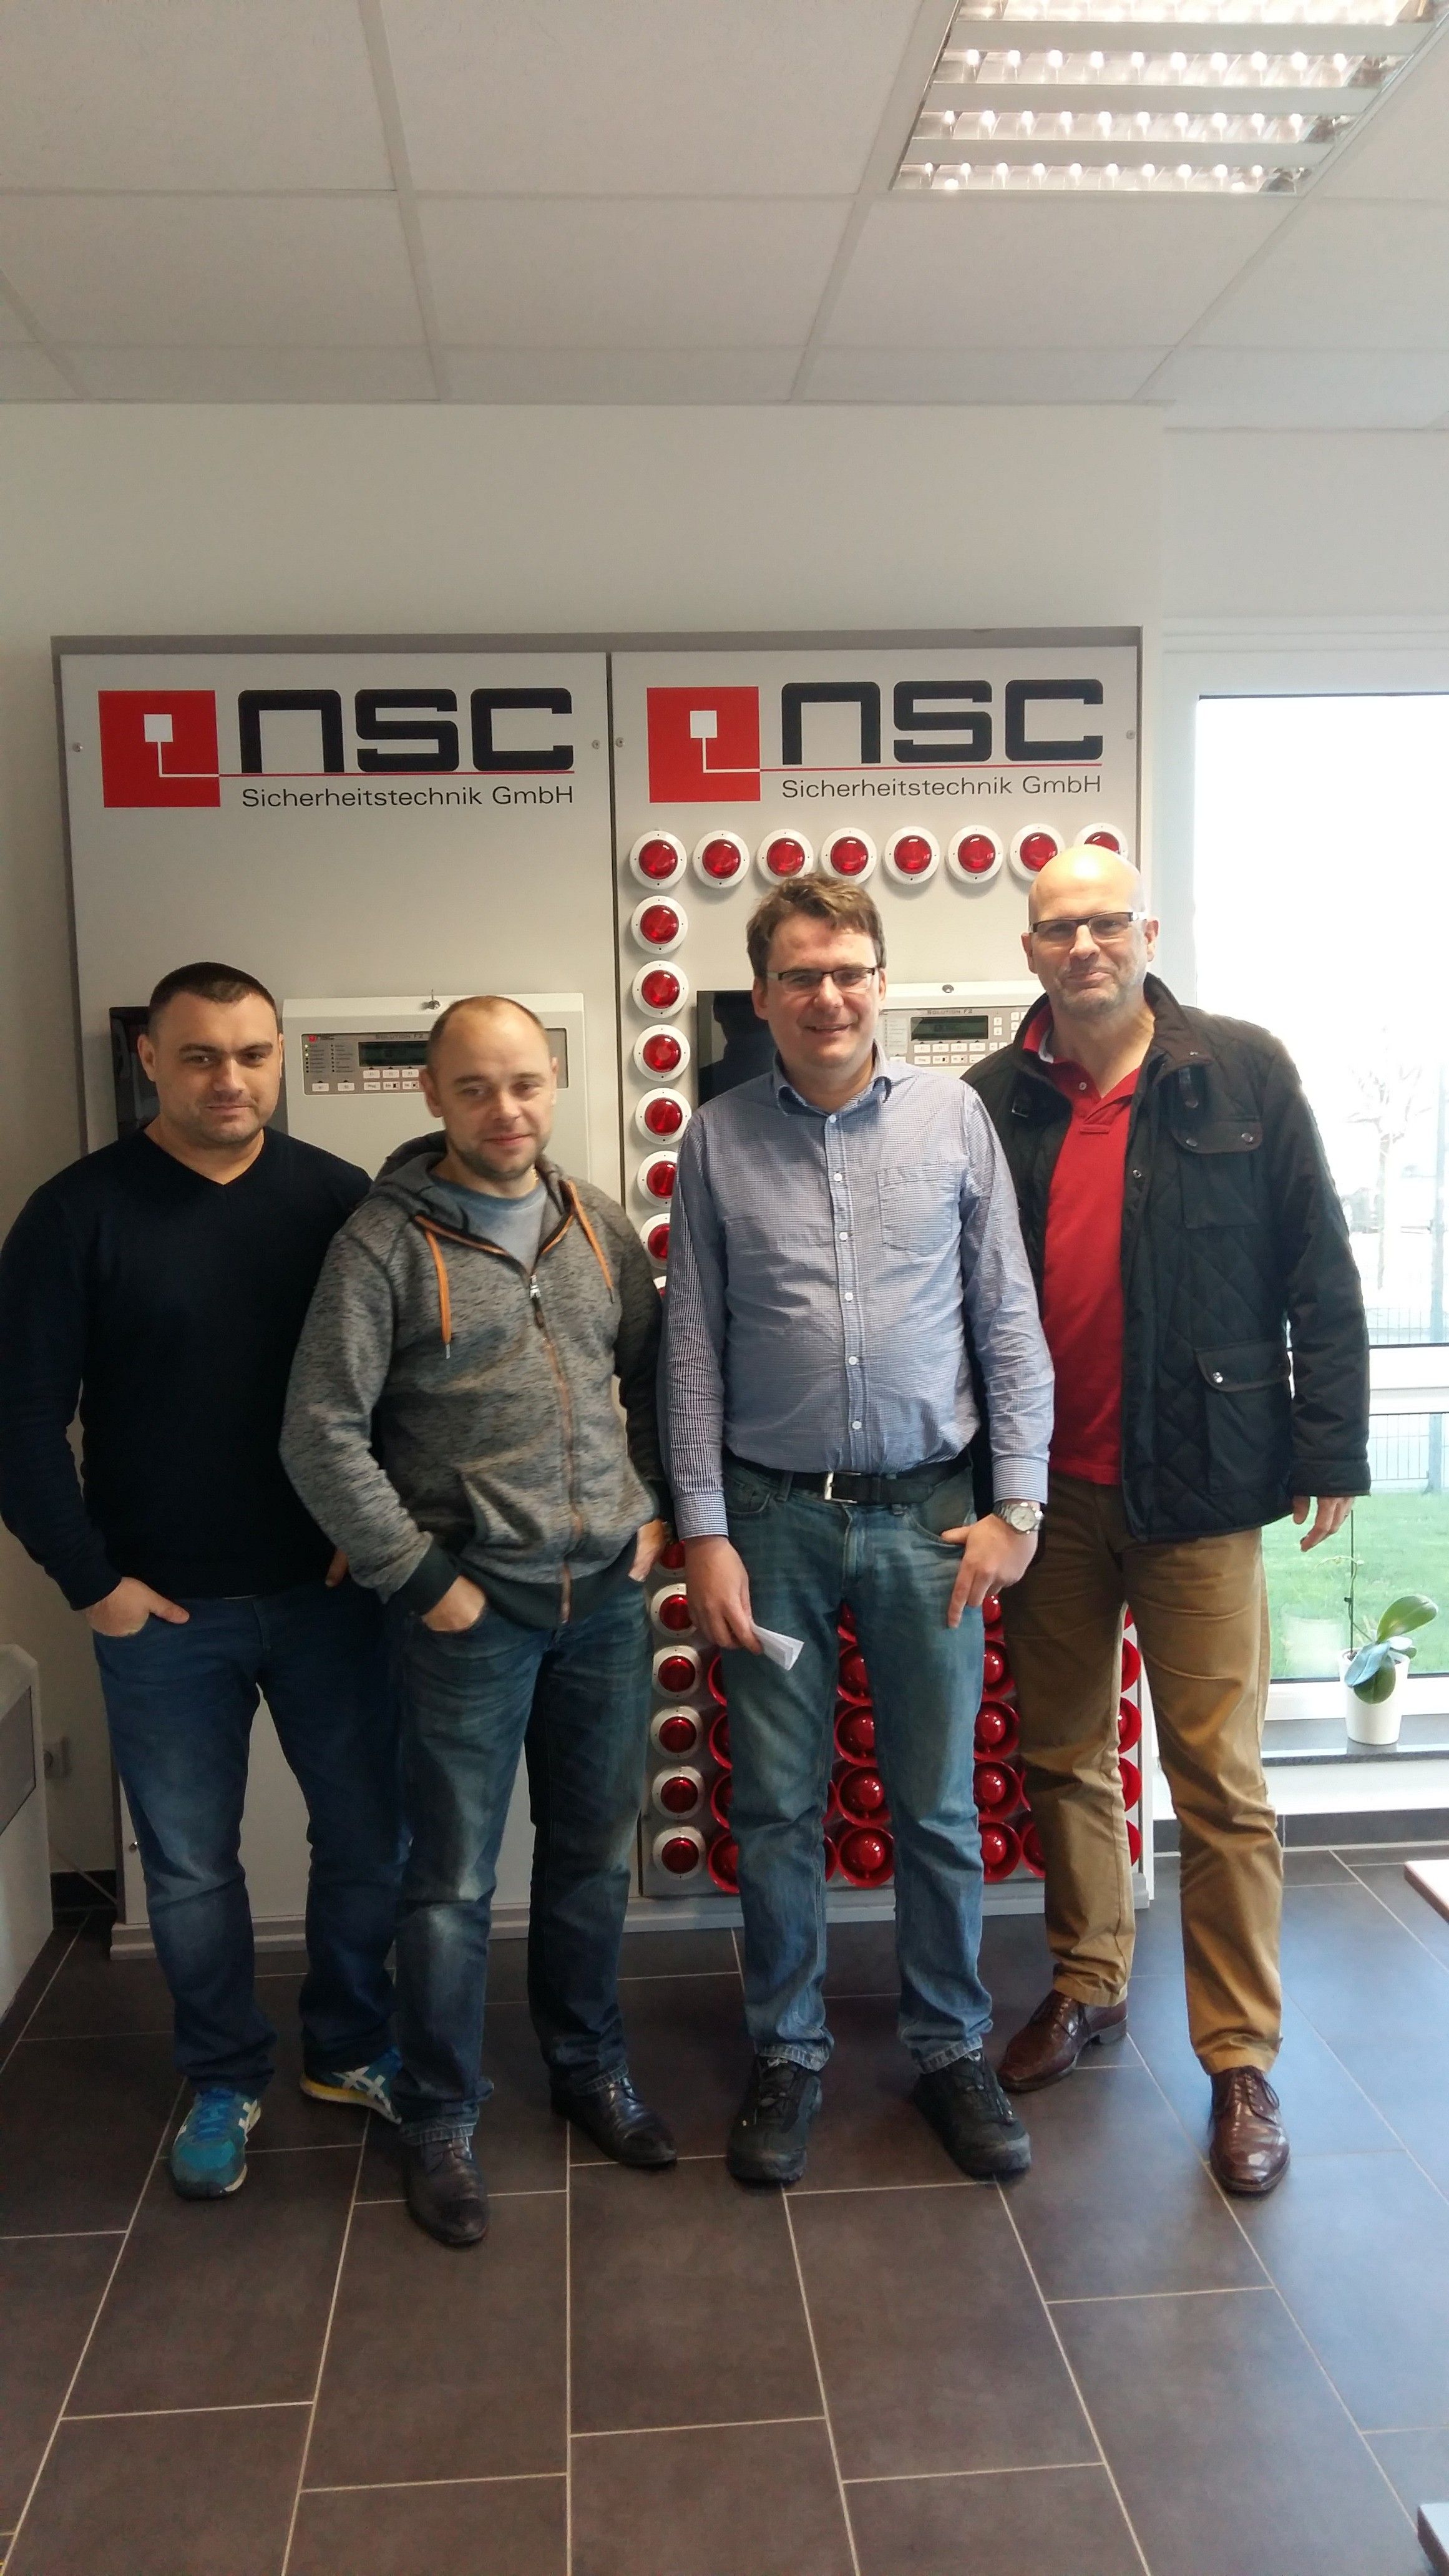 Специалисты "Альянс групп" прошли обучение в тренинг-центре NSC Sicherheitstechnik GmbH.